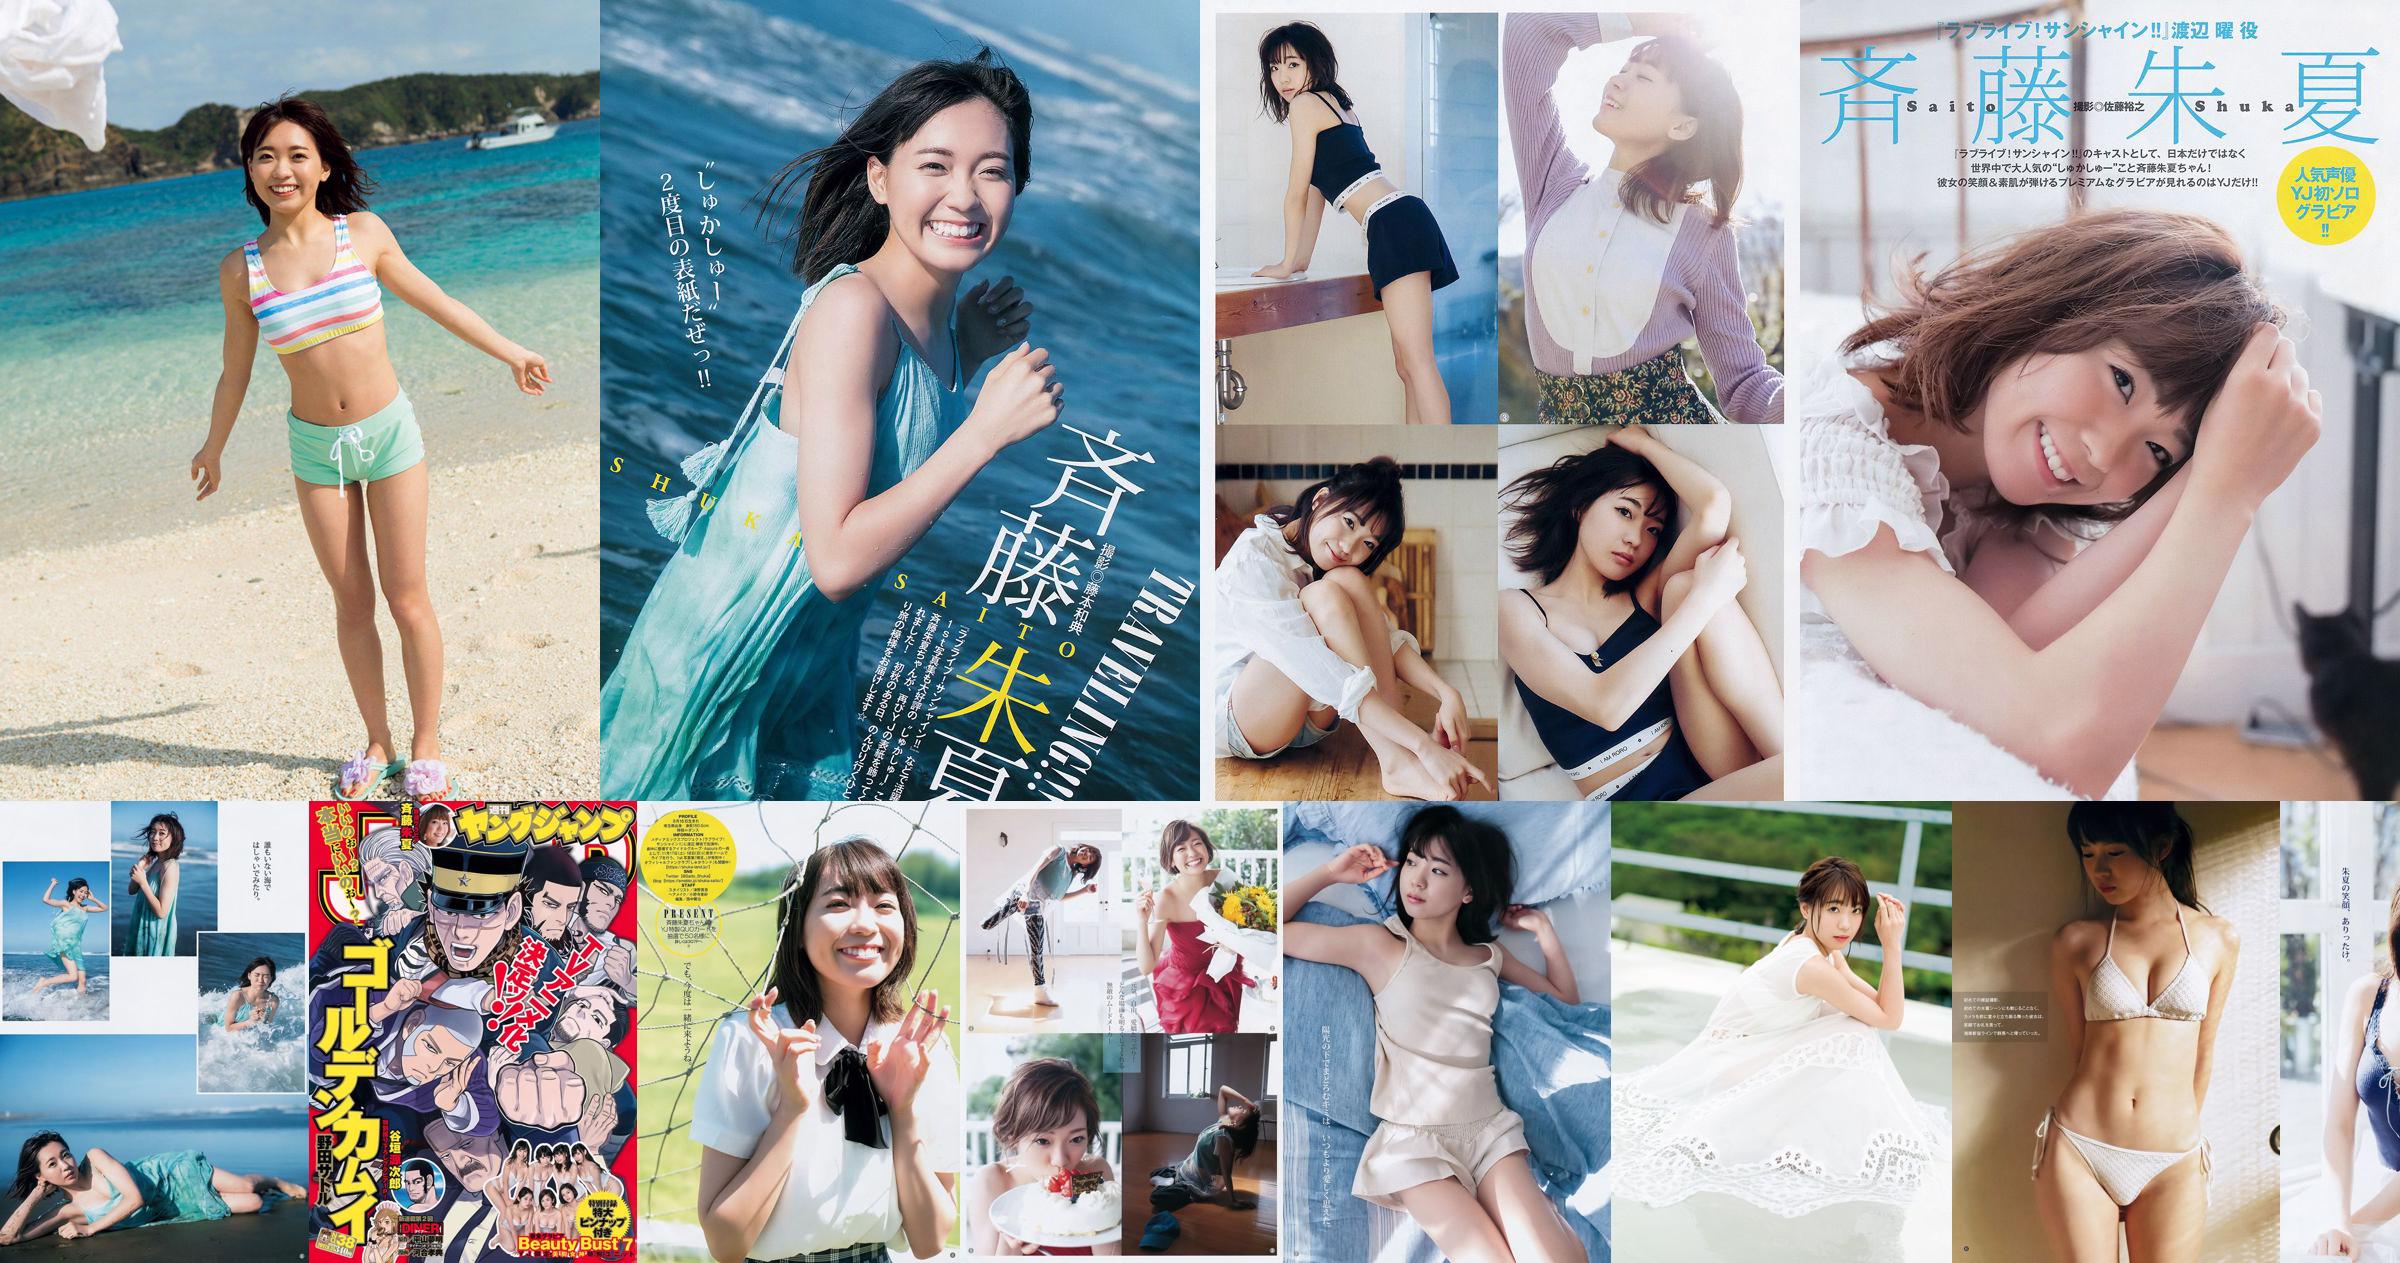 Shuka Saito Beauty Bust 7 [Weekly Young Jump] 2017 No.38 Photo No.af4364 Page 1